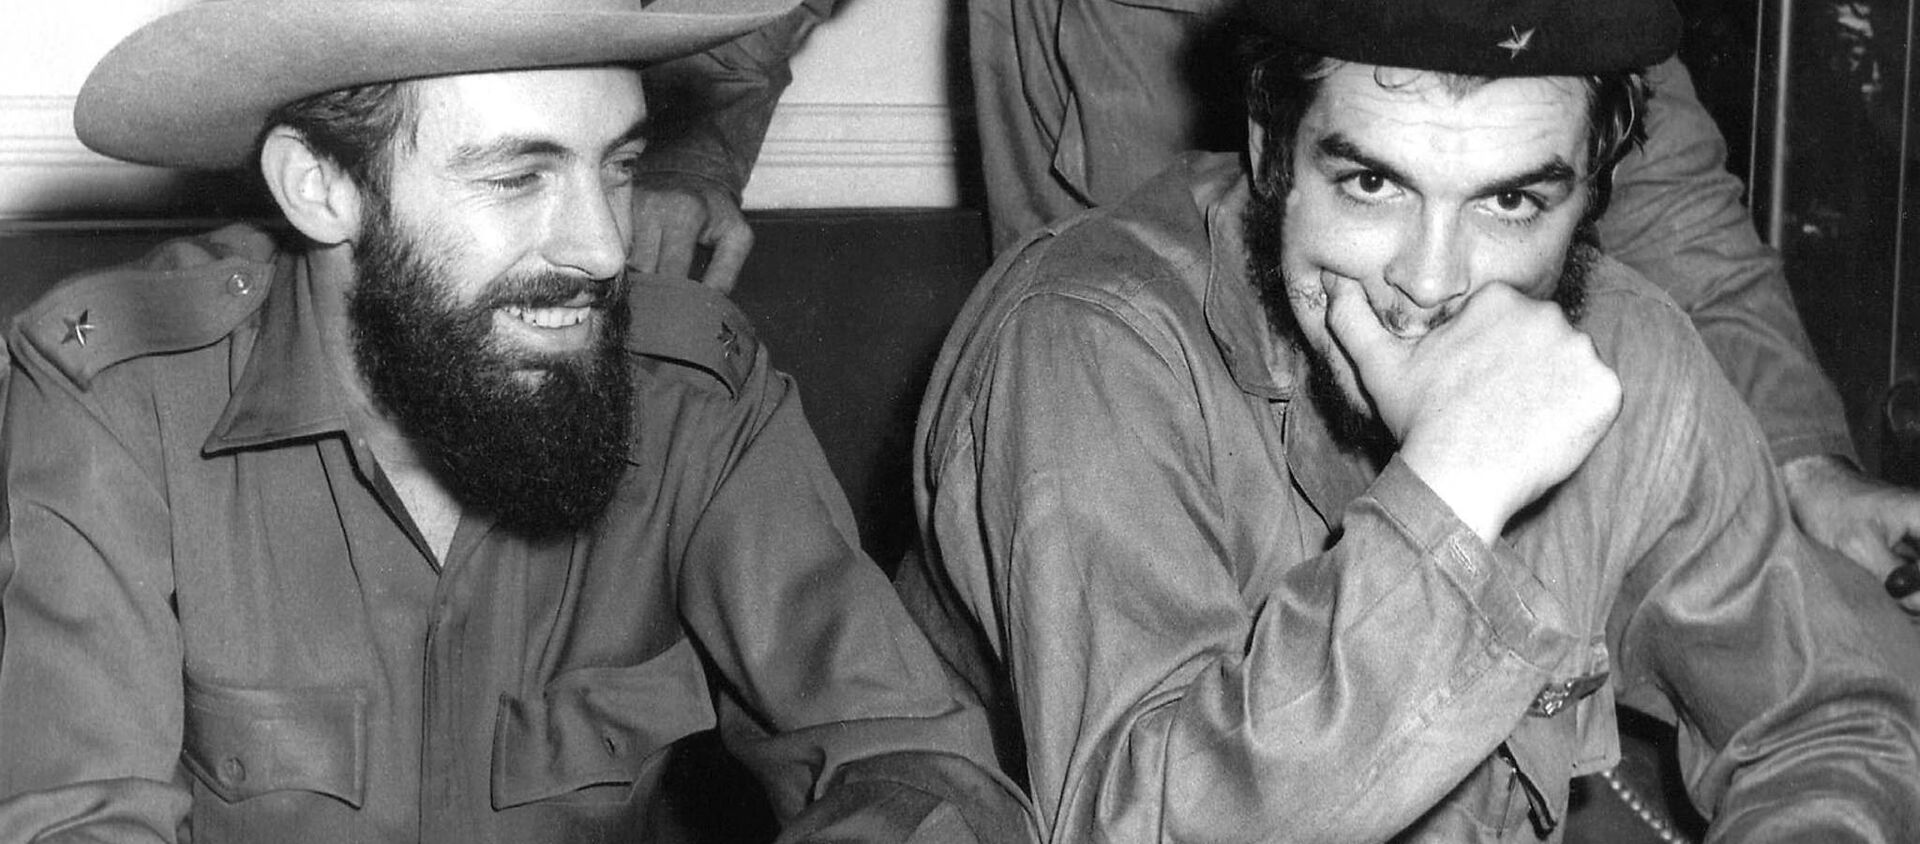 Camilo Cienfuegos y el Che Guevara - Sputnik Mundo, 1920, 08.10.2018